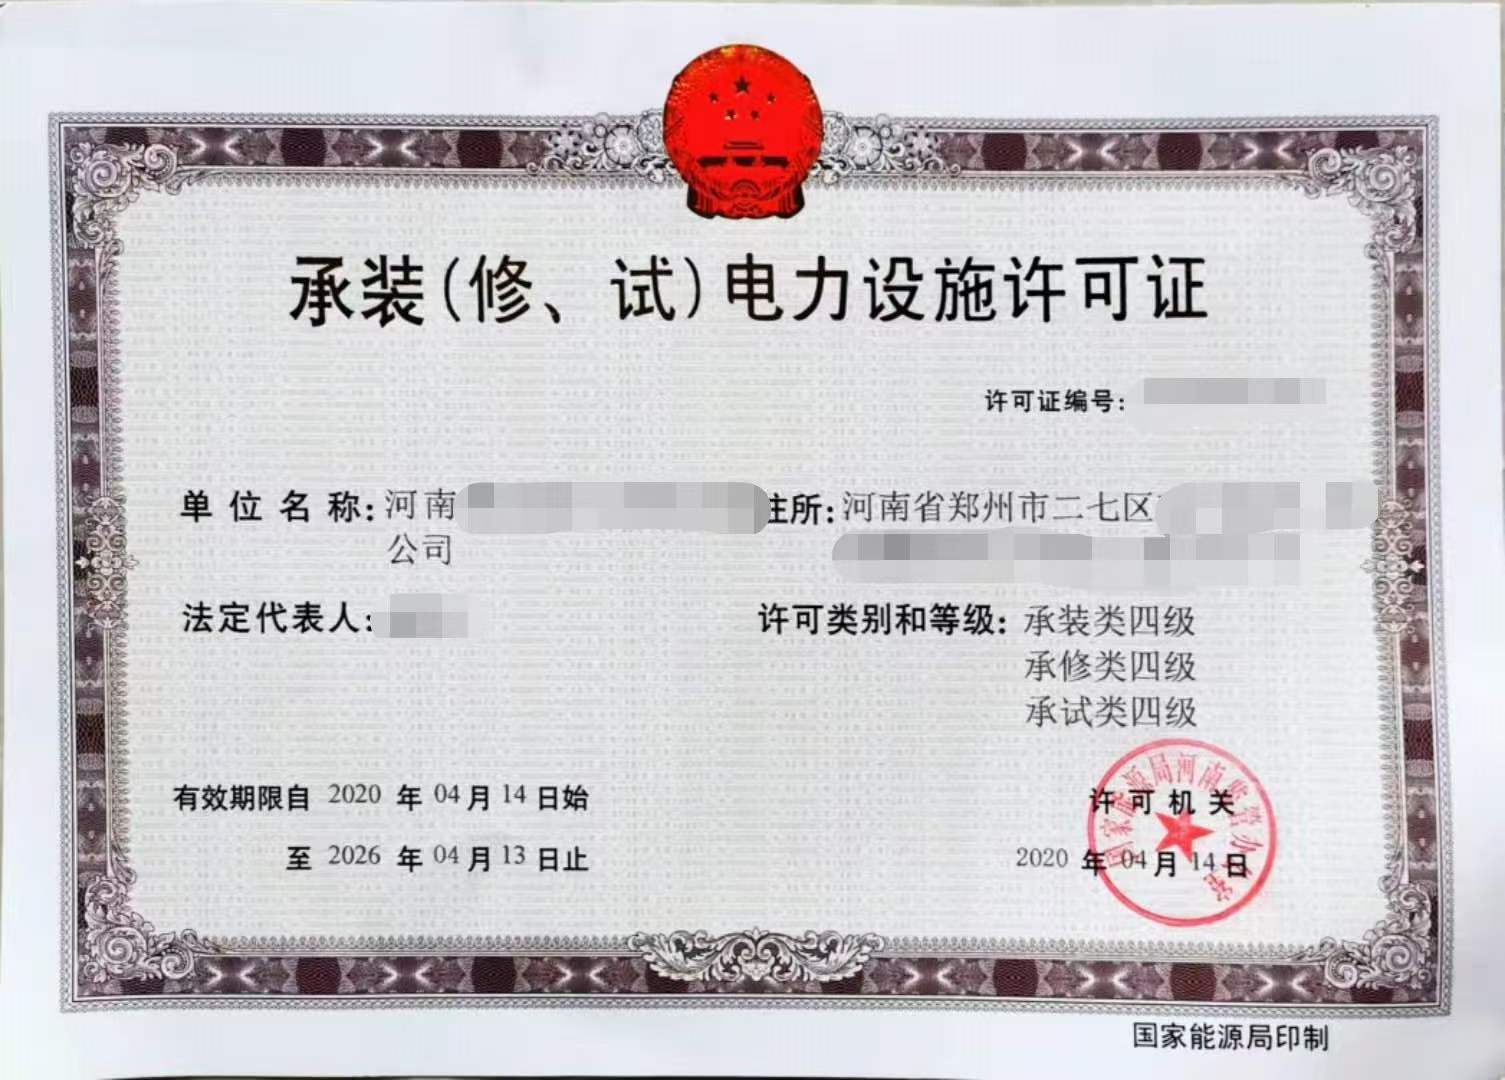 代办郑州电力设施许可证五级或电力许可证四级资质